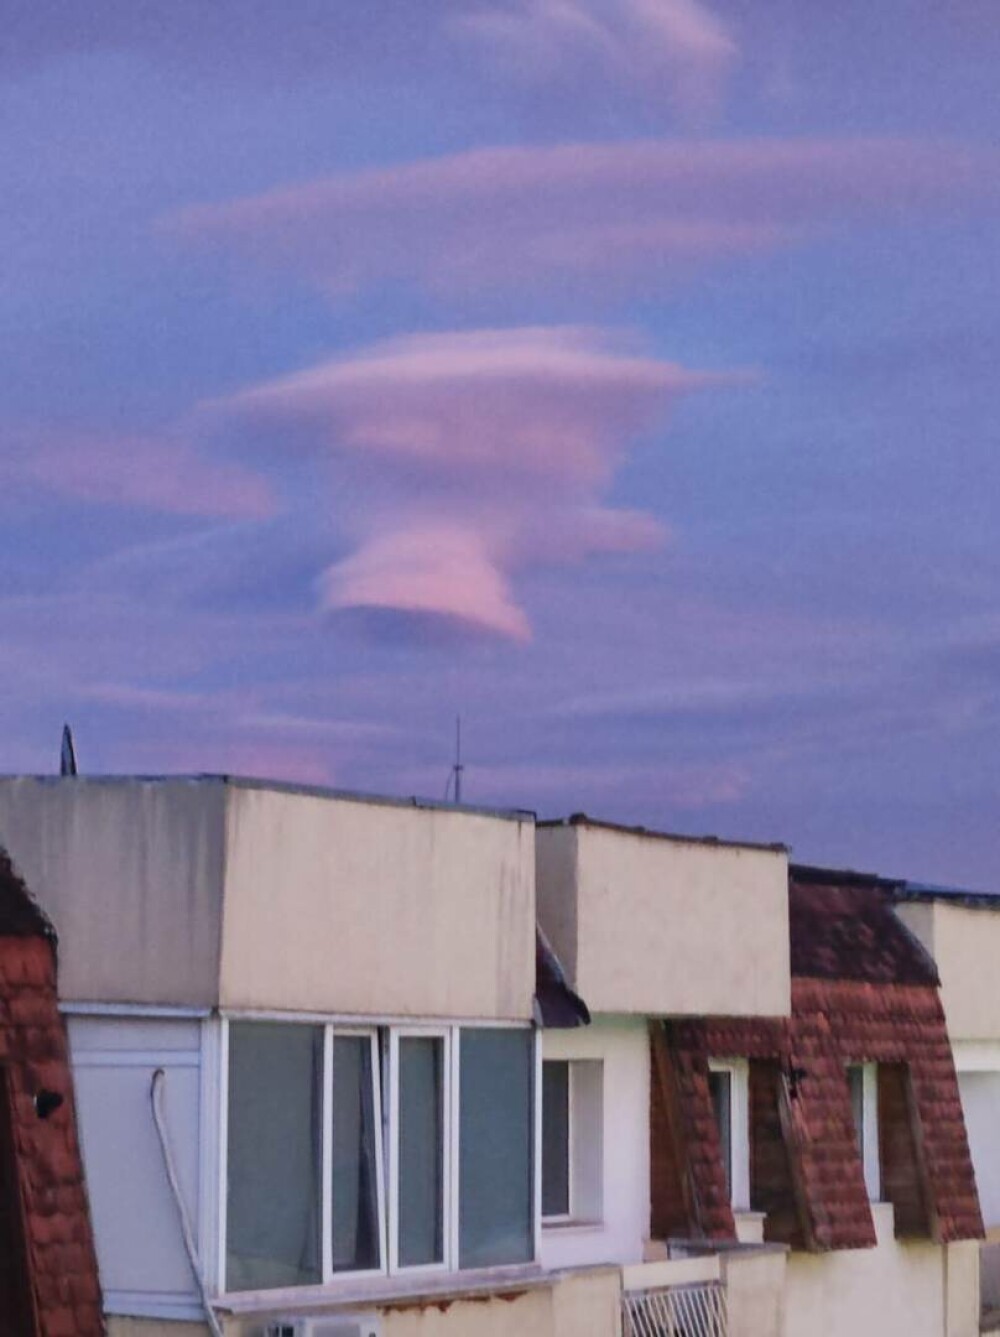 Norul OZN care i-a înspăimântat pe locuitorii din Câmpulung Muscel. Imaginea stranie a creat isterie GALERIE FOTO & VIDEO - Imaginea 12